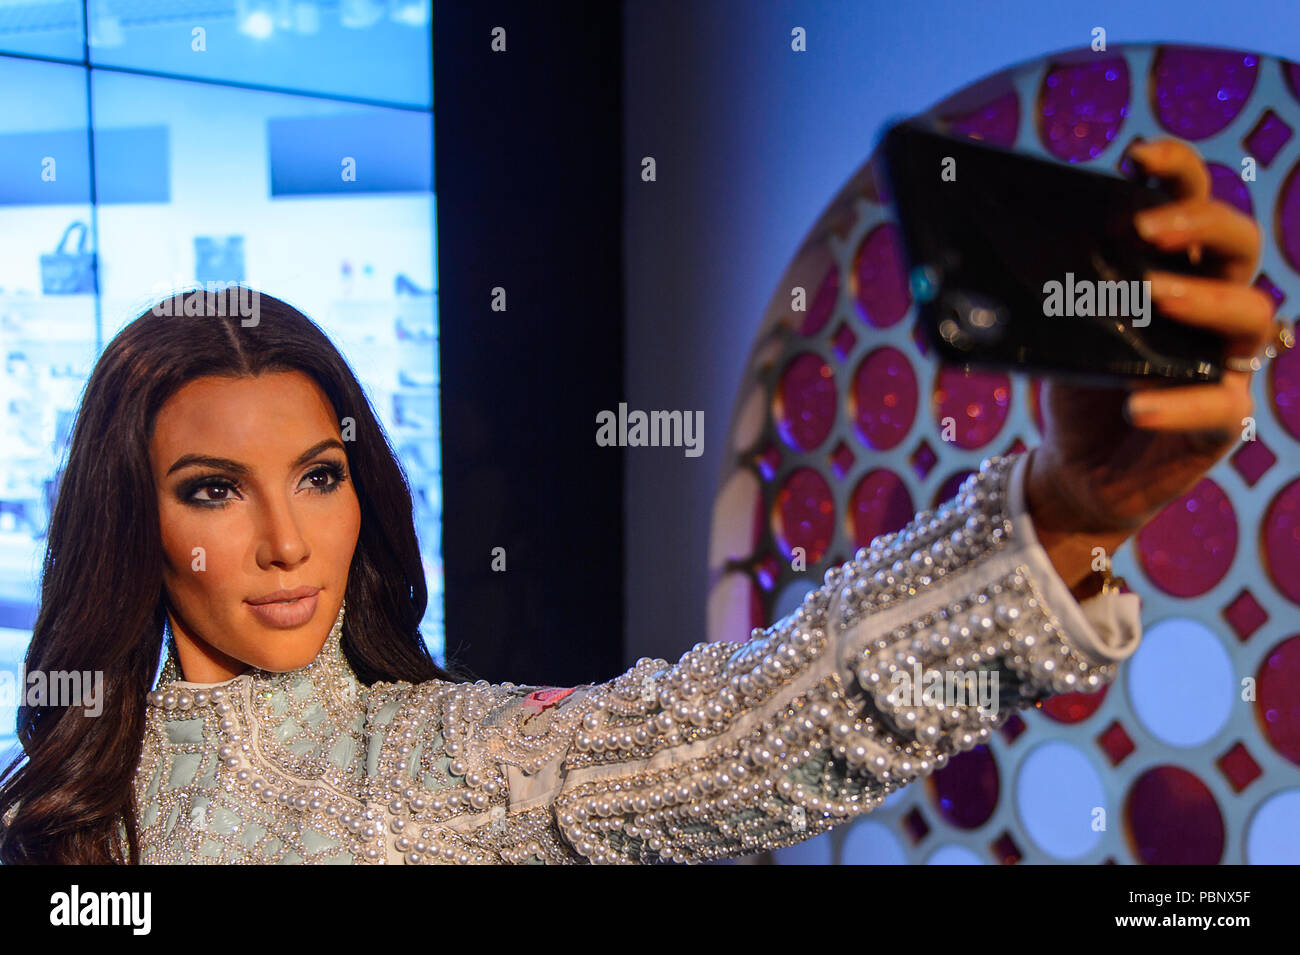 Londres, Angleterre - le 22 juillet 2016 : Kimberly Kim Kardashian, personnalité de la télévision de l'Ouest américain, du musée de cire de Madame Tussauds. Banque D'Images